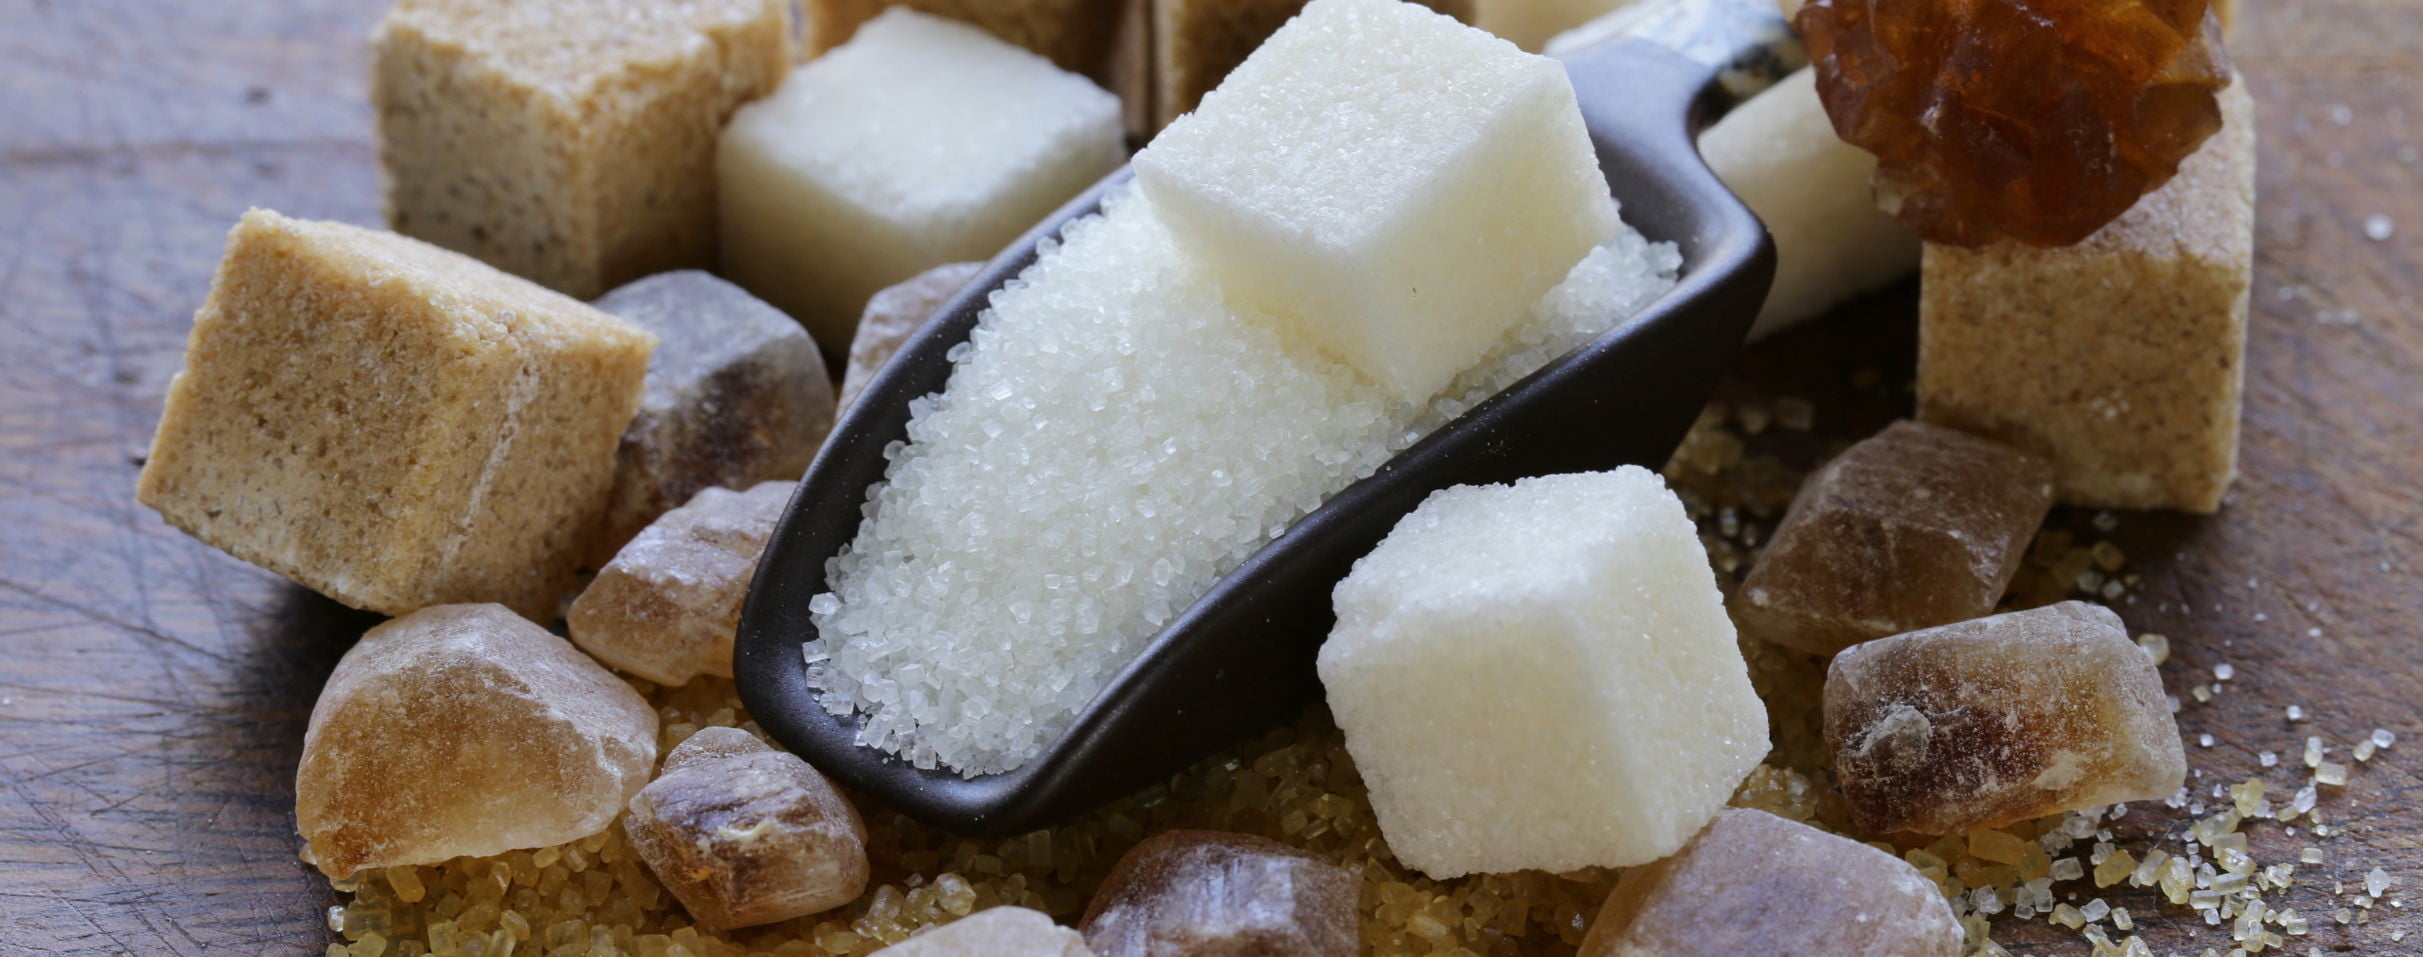 كيف تتم صناعة السكر